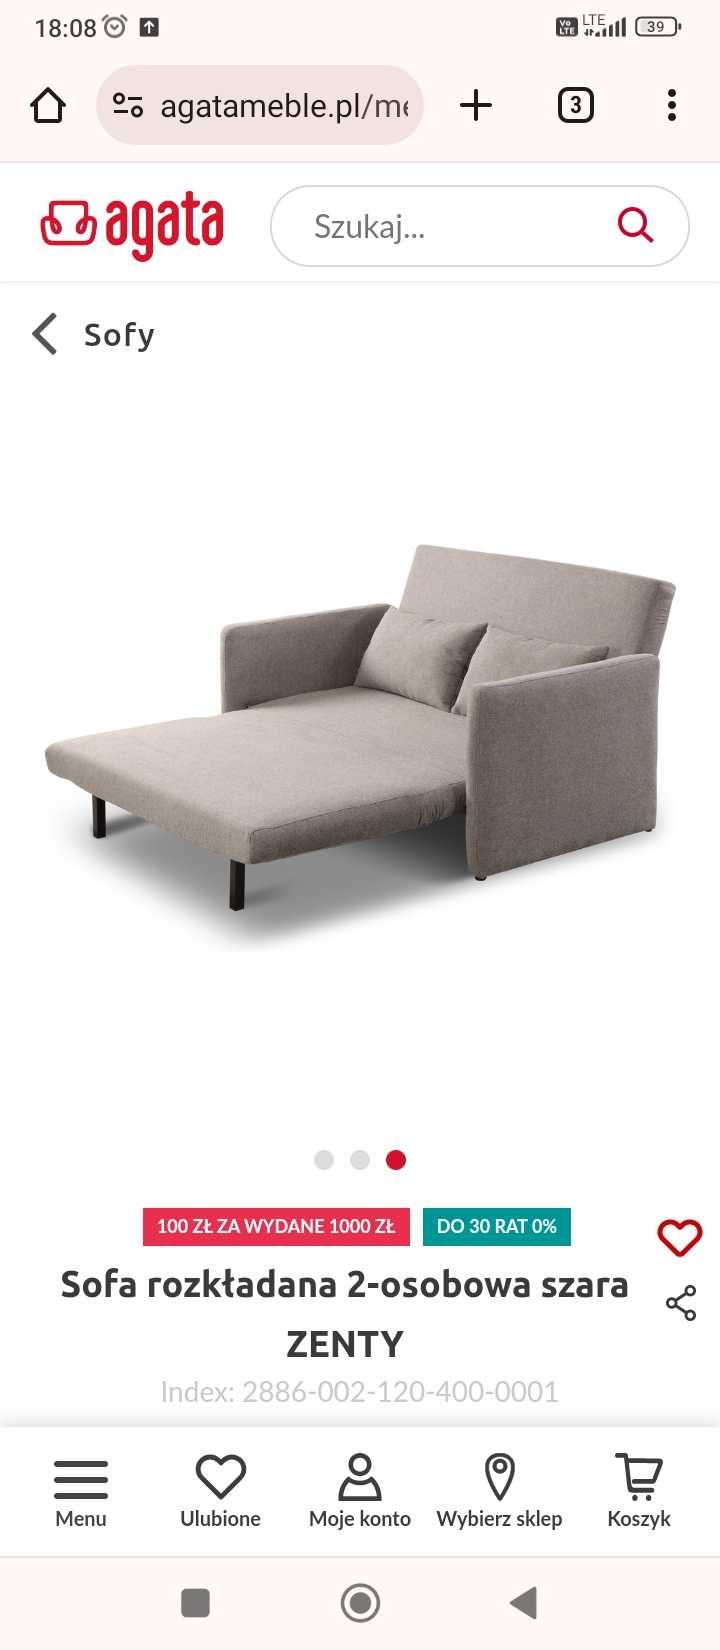 Nowa Sofa Zenty z Agata Meble